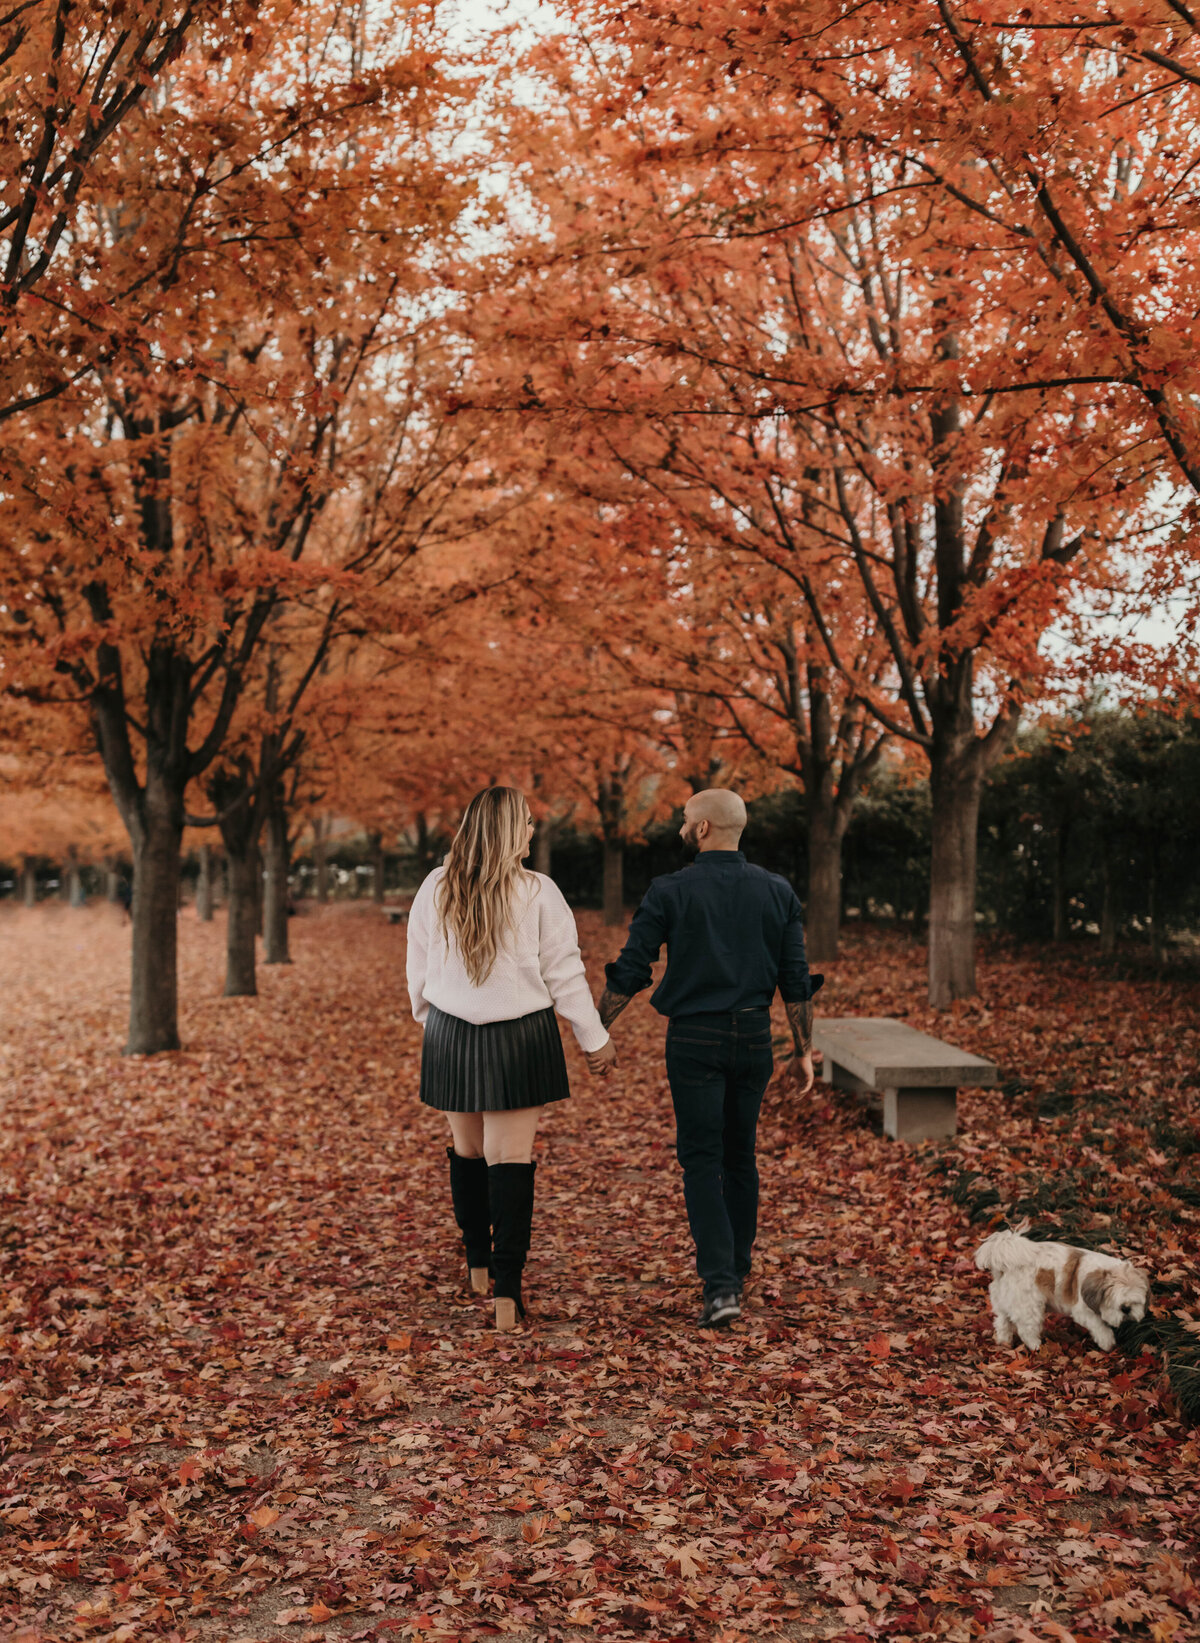 Couple walking through orange fall leaves